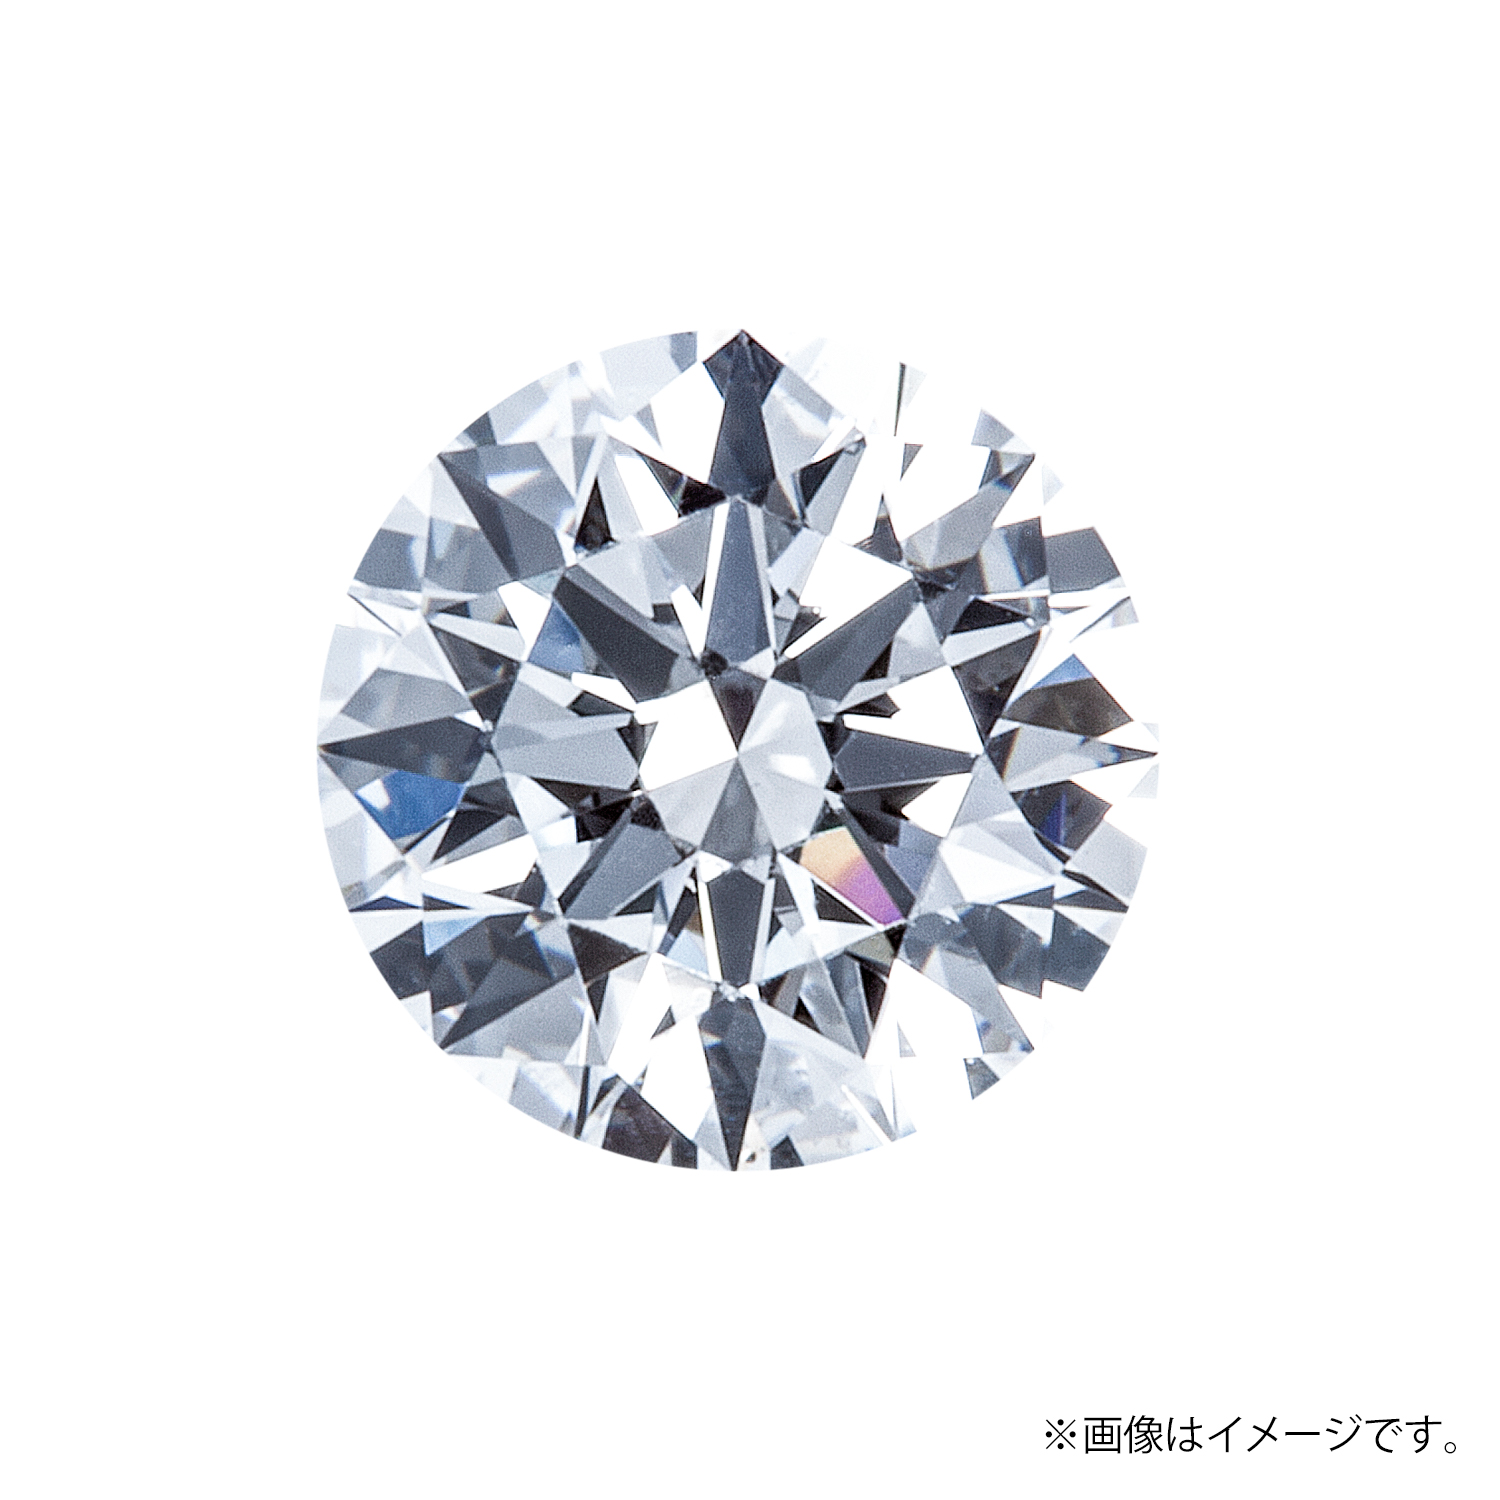 0.444ct Round ダイヤモンド / F / SI2 / 